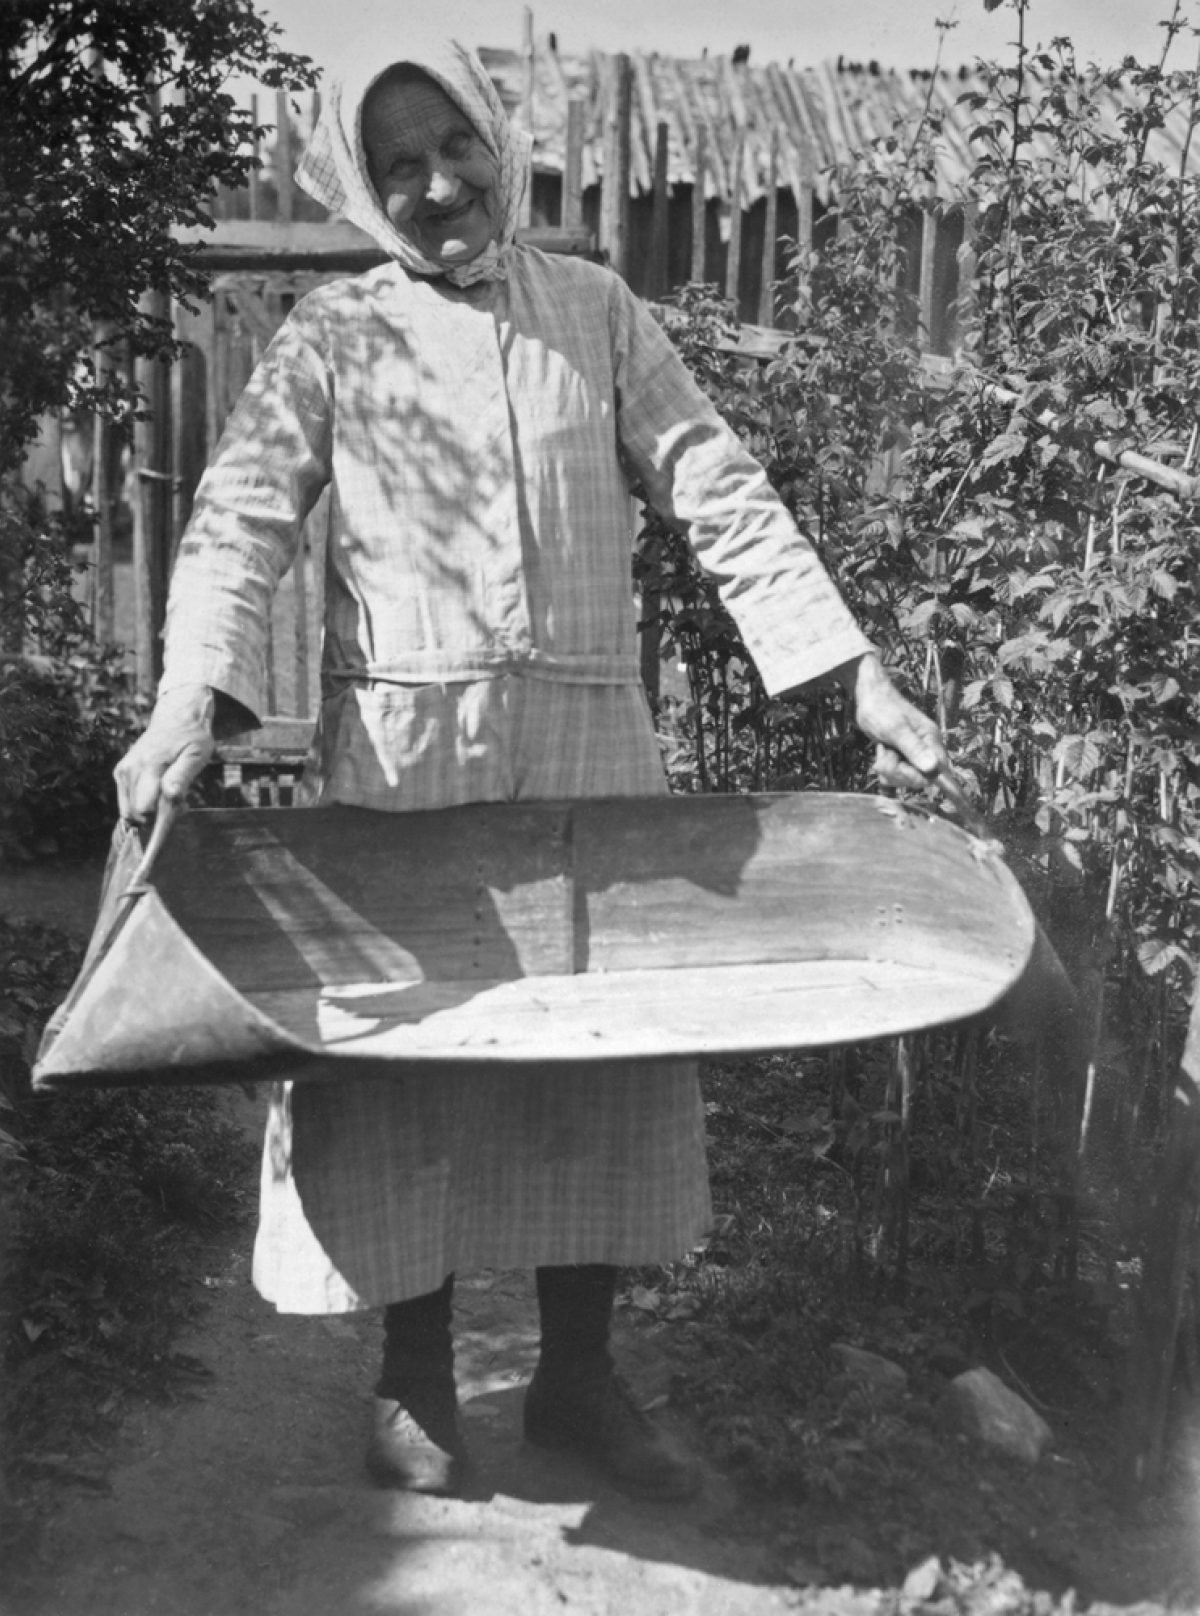 Bondhustrun Maria Mattila med en vanna i handen i byn Haankylä i Karelen i Egentliga Finland 1933. Foto: Tyyni Vahter / Museiverkets Bildsamlingar